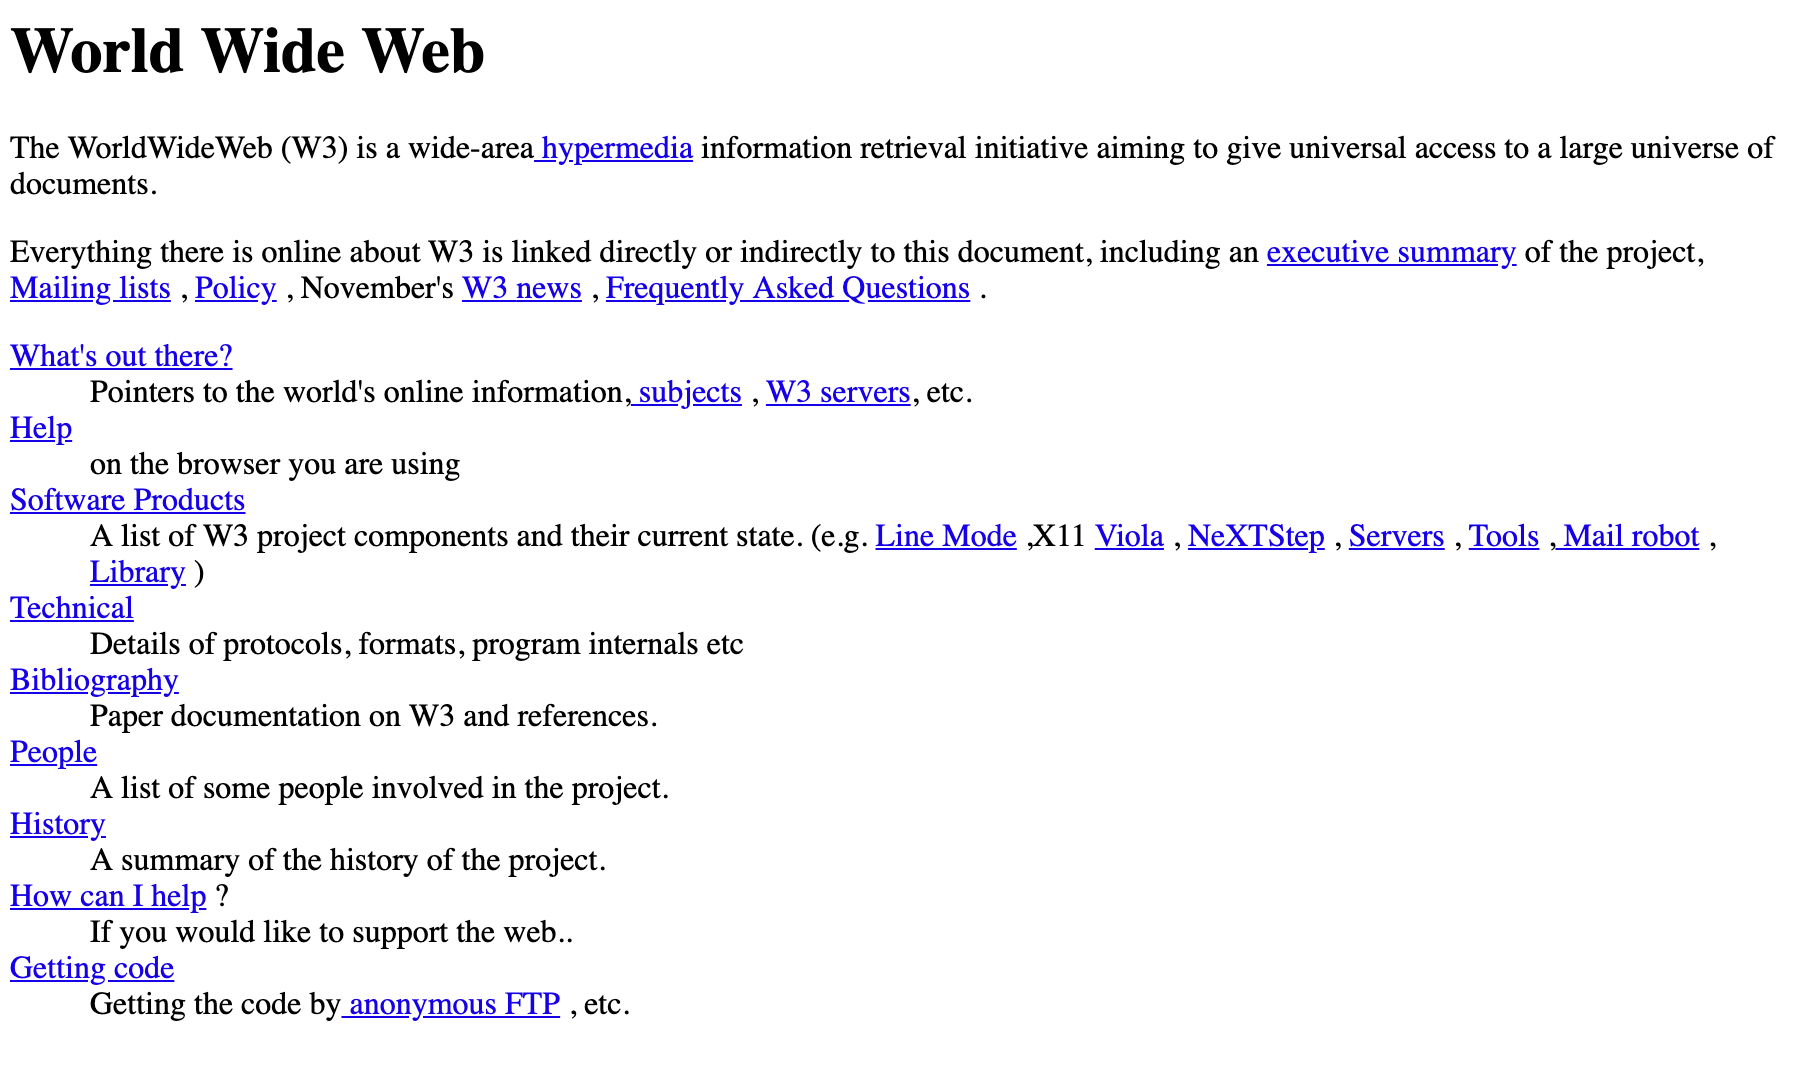 Imagen del primer sitio web de Internet creado en 1991